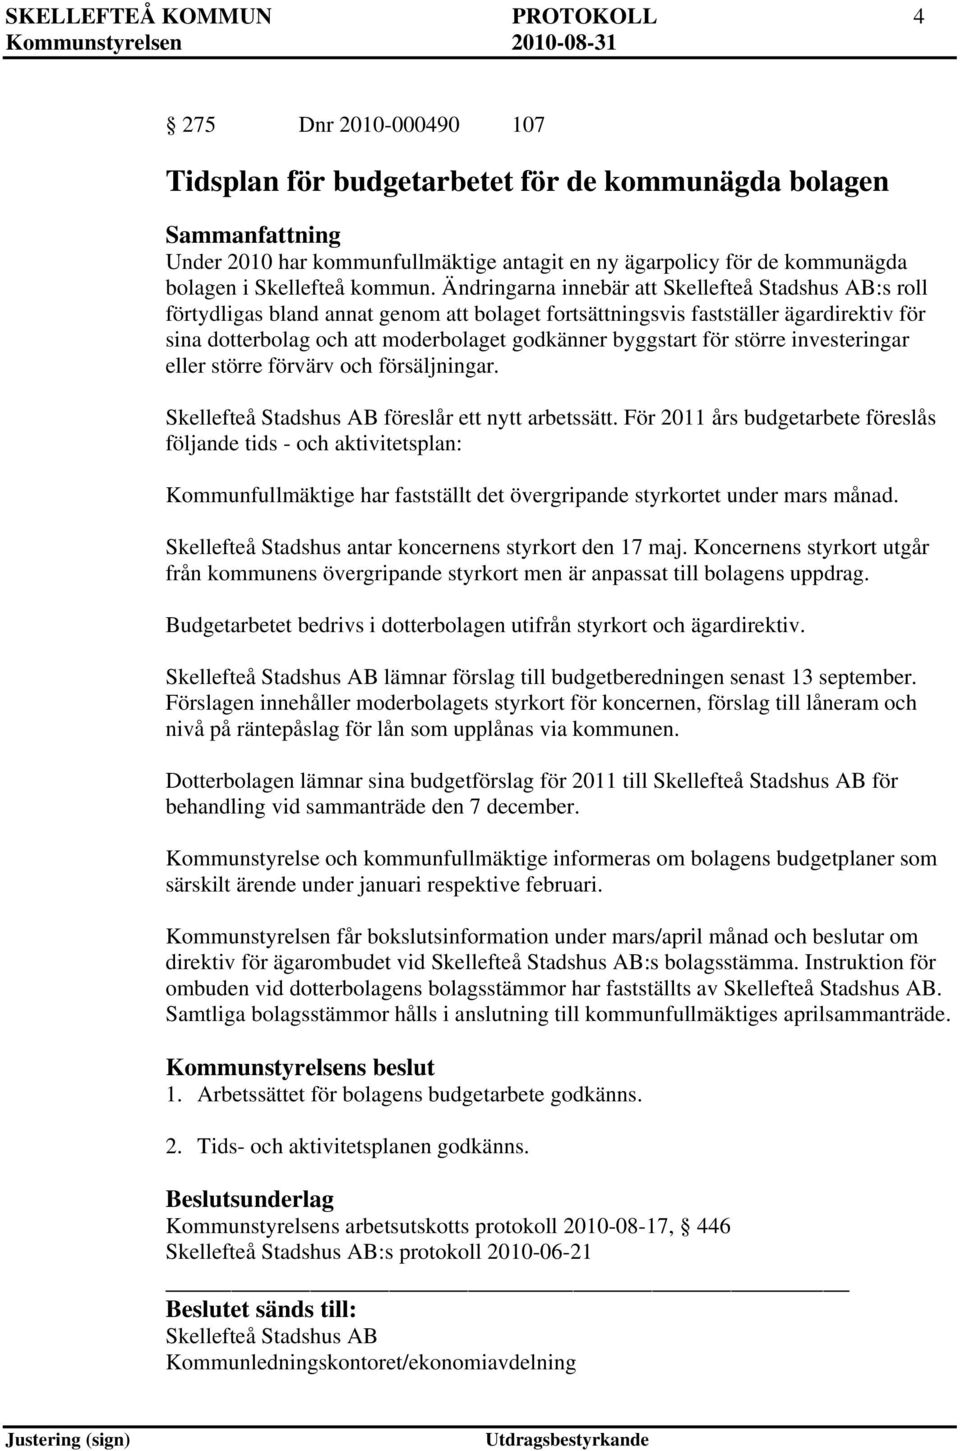 Ändringarna innebär att Skellefteå Stadshus AB:s roll förtydligas bland annat genom att bolaget fortsättningsvis fastställer ägardirektiv för sina dotterbolag och att moderbolaget godkänner byggstart